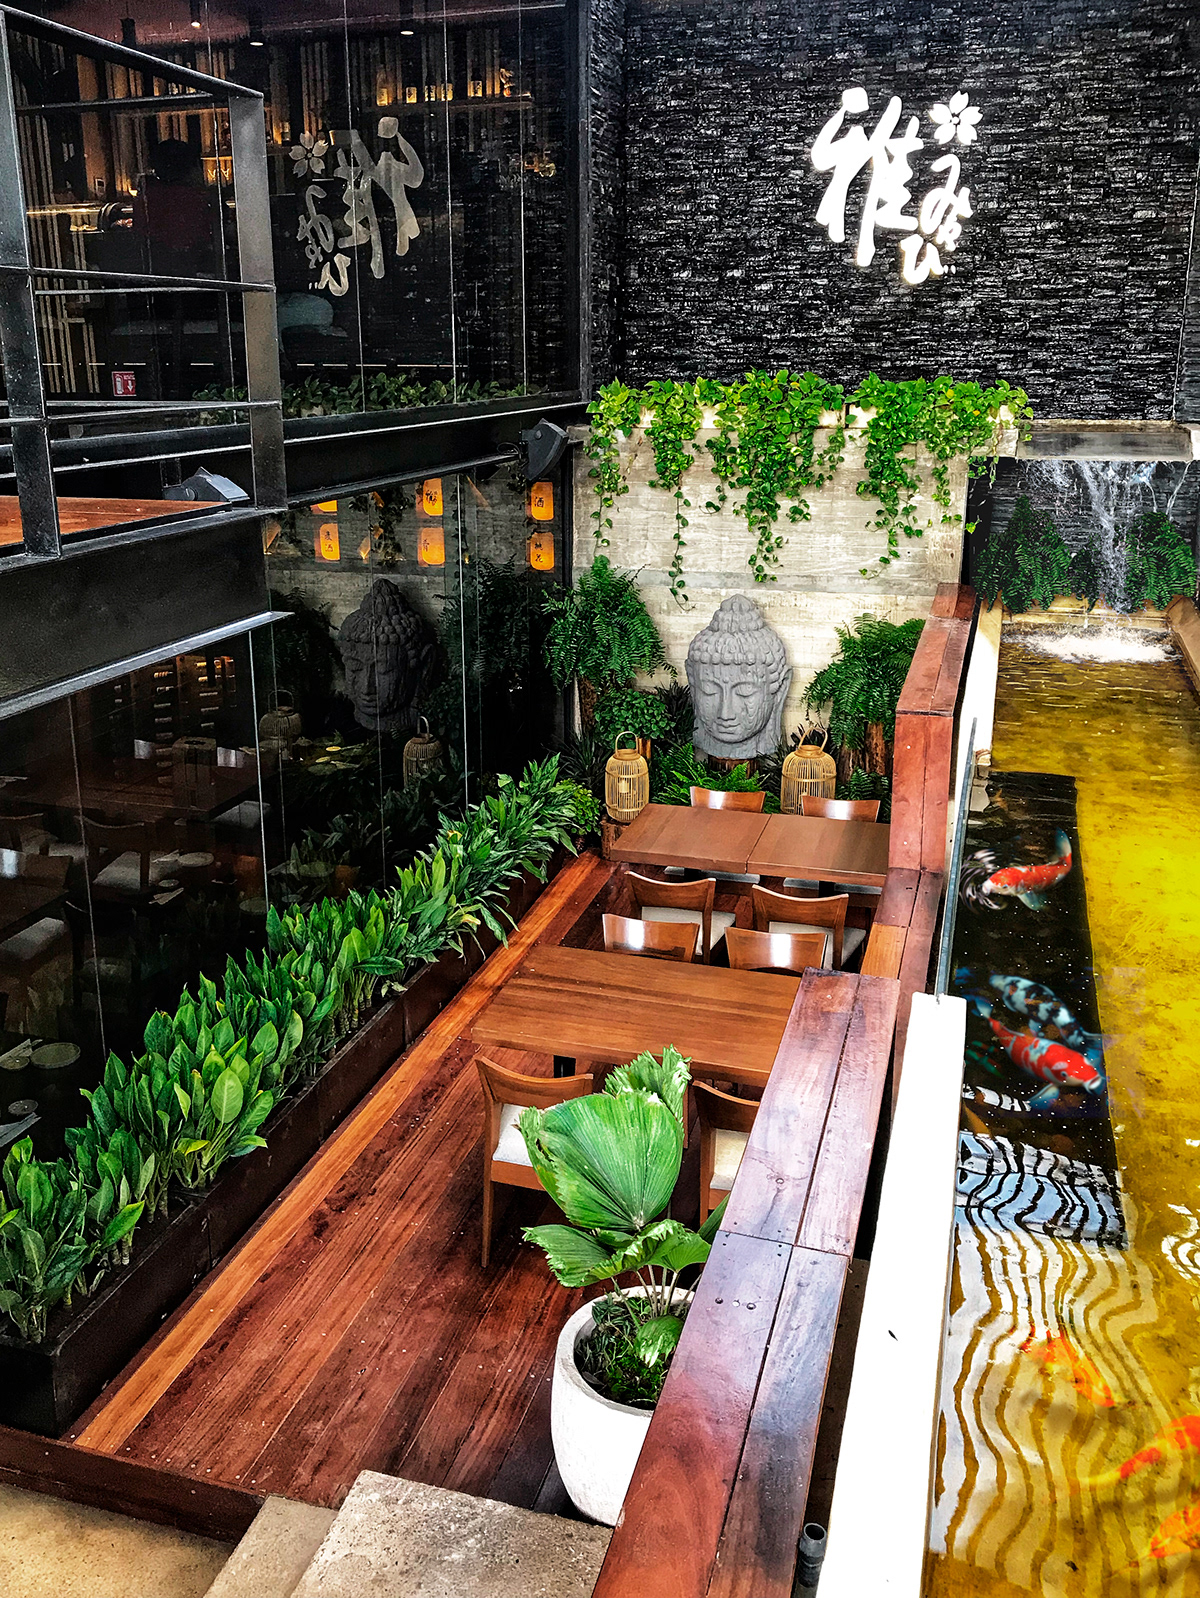 Paisajismo Sushi bar Sake mexico interior design  terrace japanese bar restaurant Diseño de interior